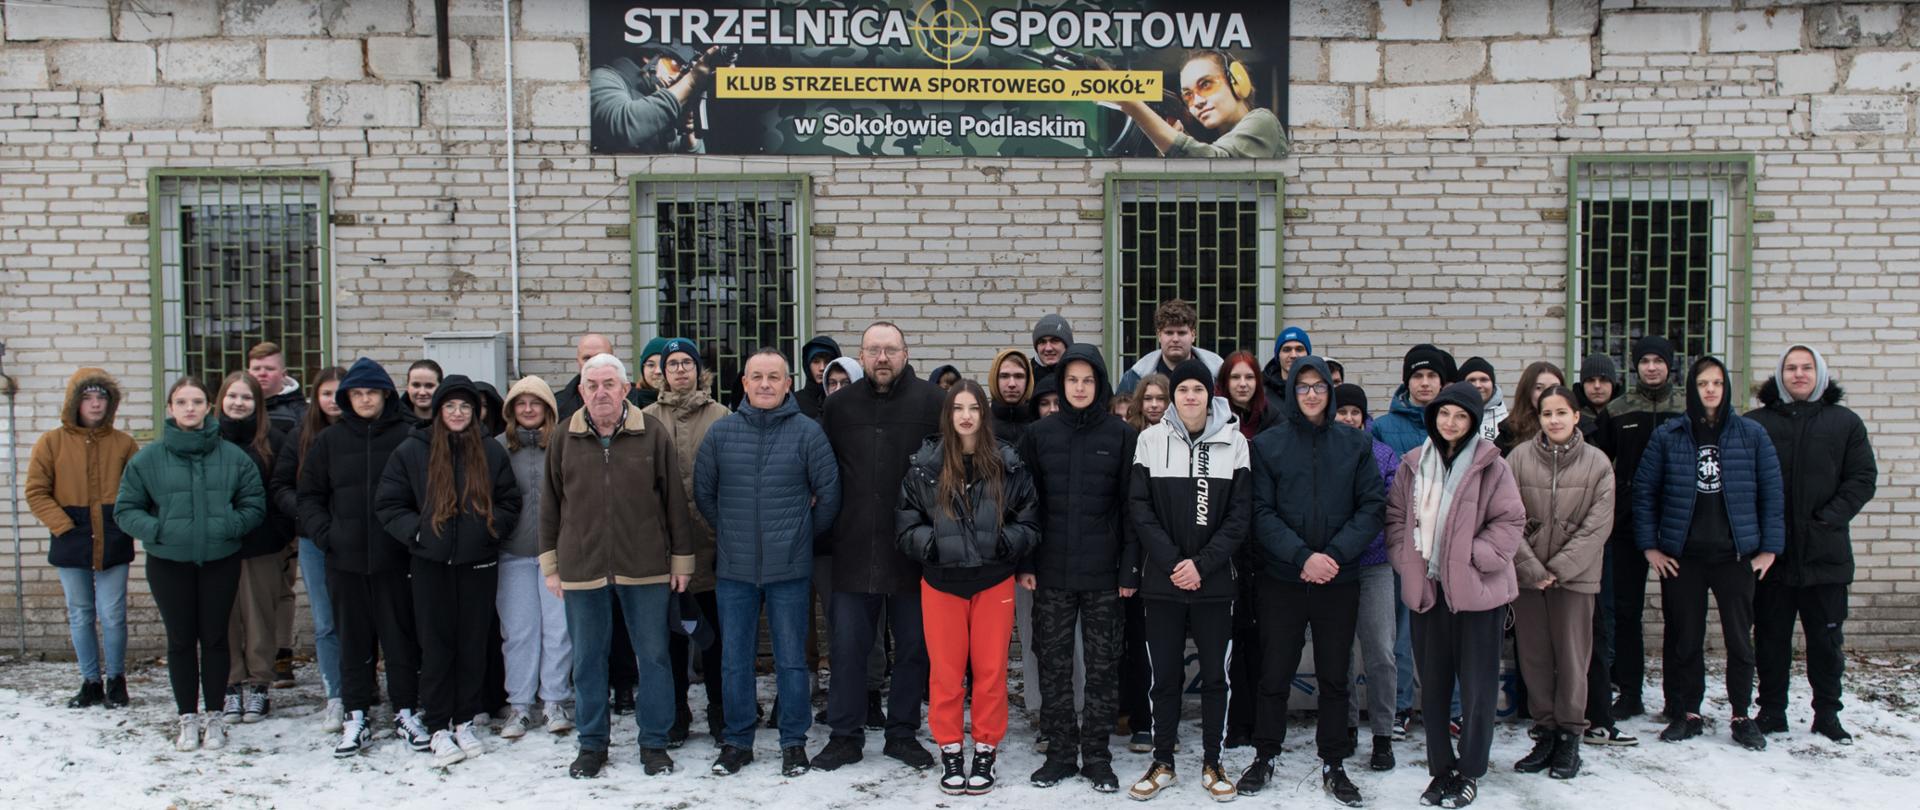 Fotografia grupowa uczestników turnieju strzeleckiego wraz z organizatorami na tle baneru Strzelnica Sportowa.